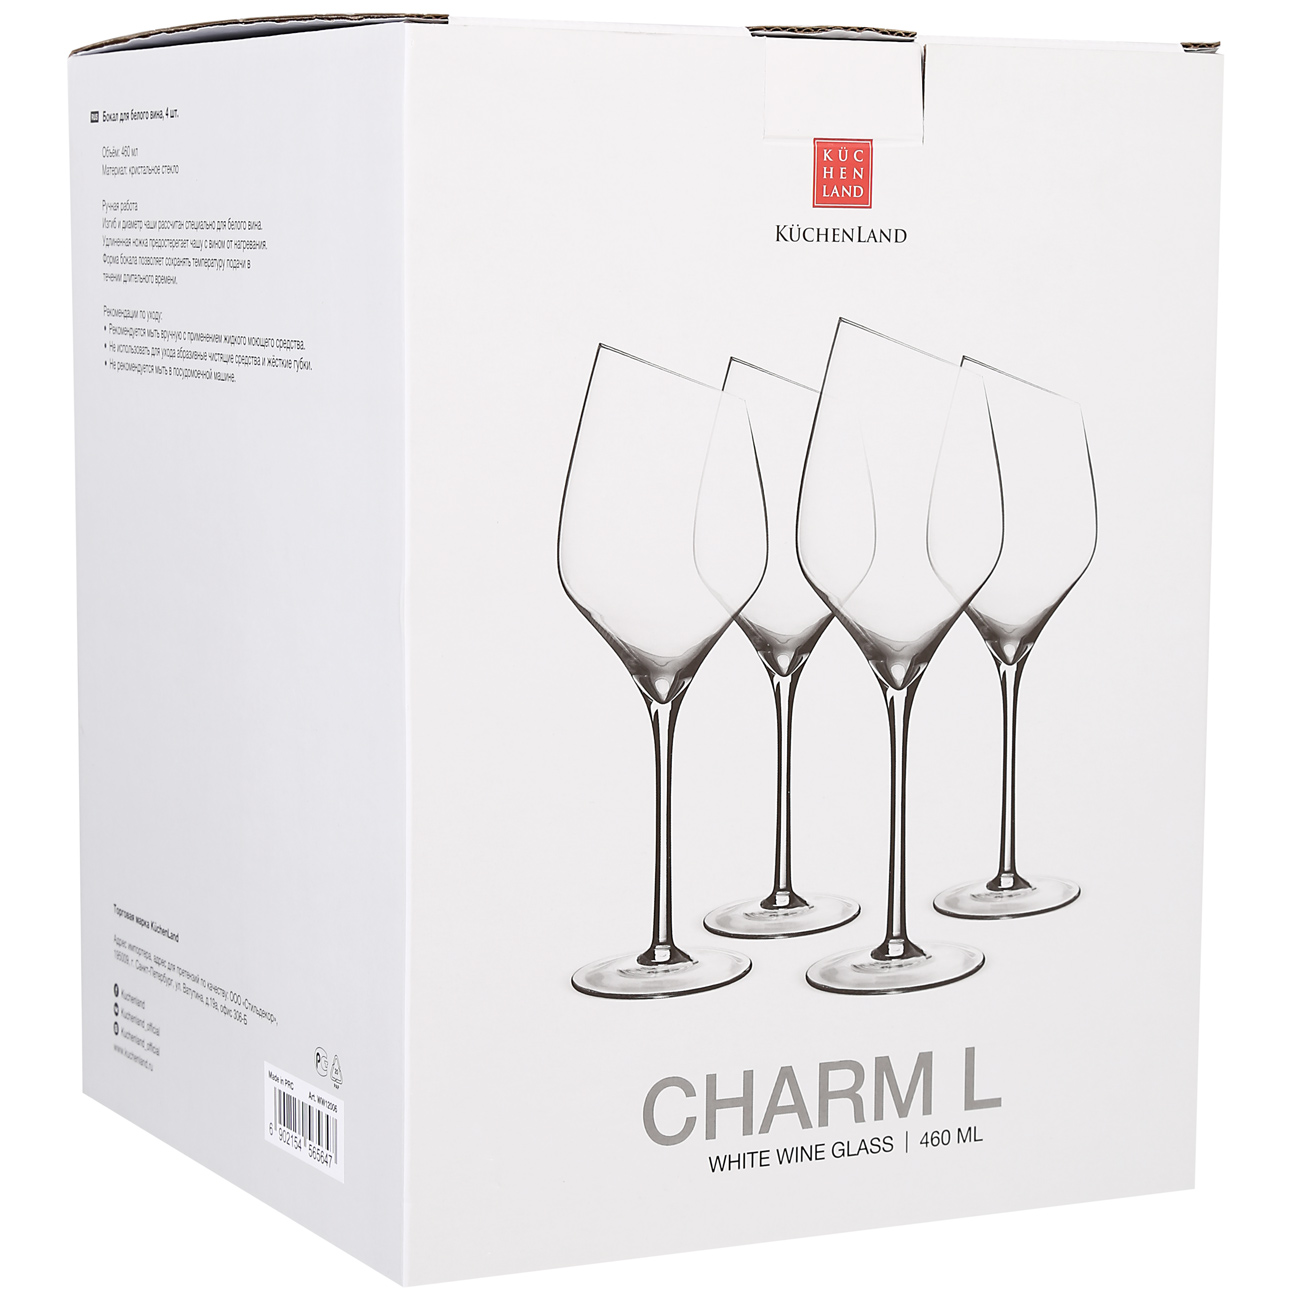 White wine glass, 460 ml, 4 pcs, Charm L изображение № 2